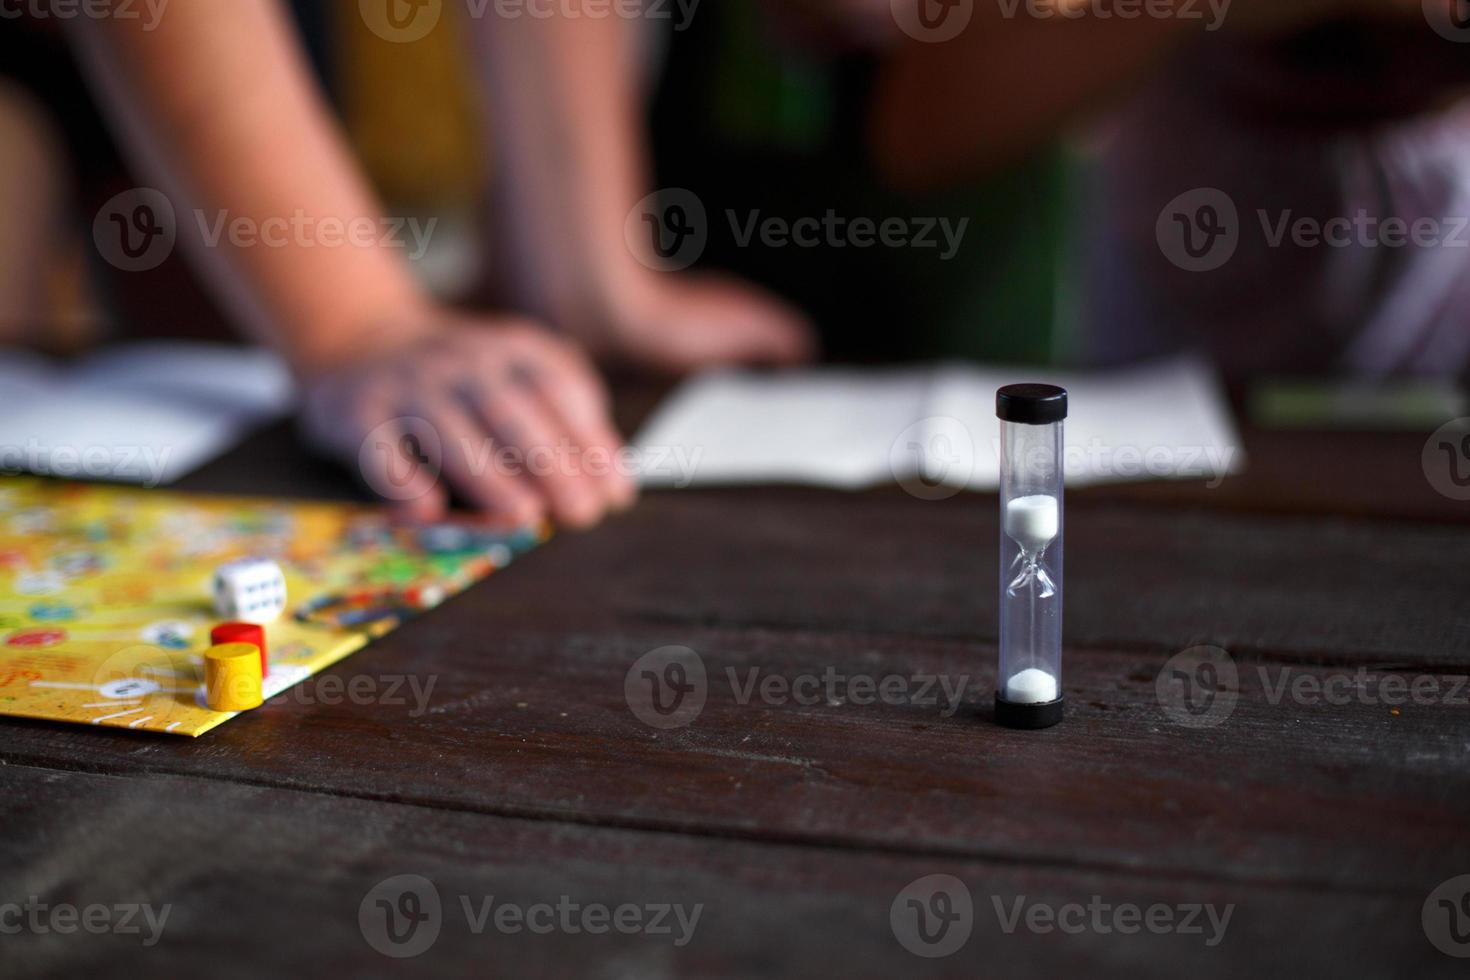 Brettspielbrett, Chips, Würfel, Timer auf einem dunklen Holztisch und Hände im Hintergrund. das konzept der teamarbeit, der intellektuellen entspannung, der firmenveranstaltung, des spielens zu hause mit kindern. Platz kopieren foto